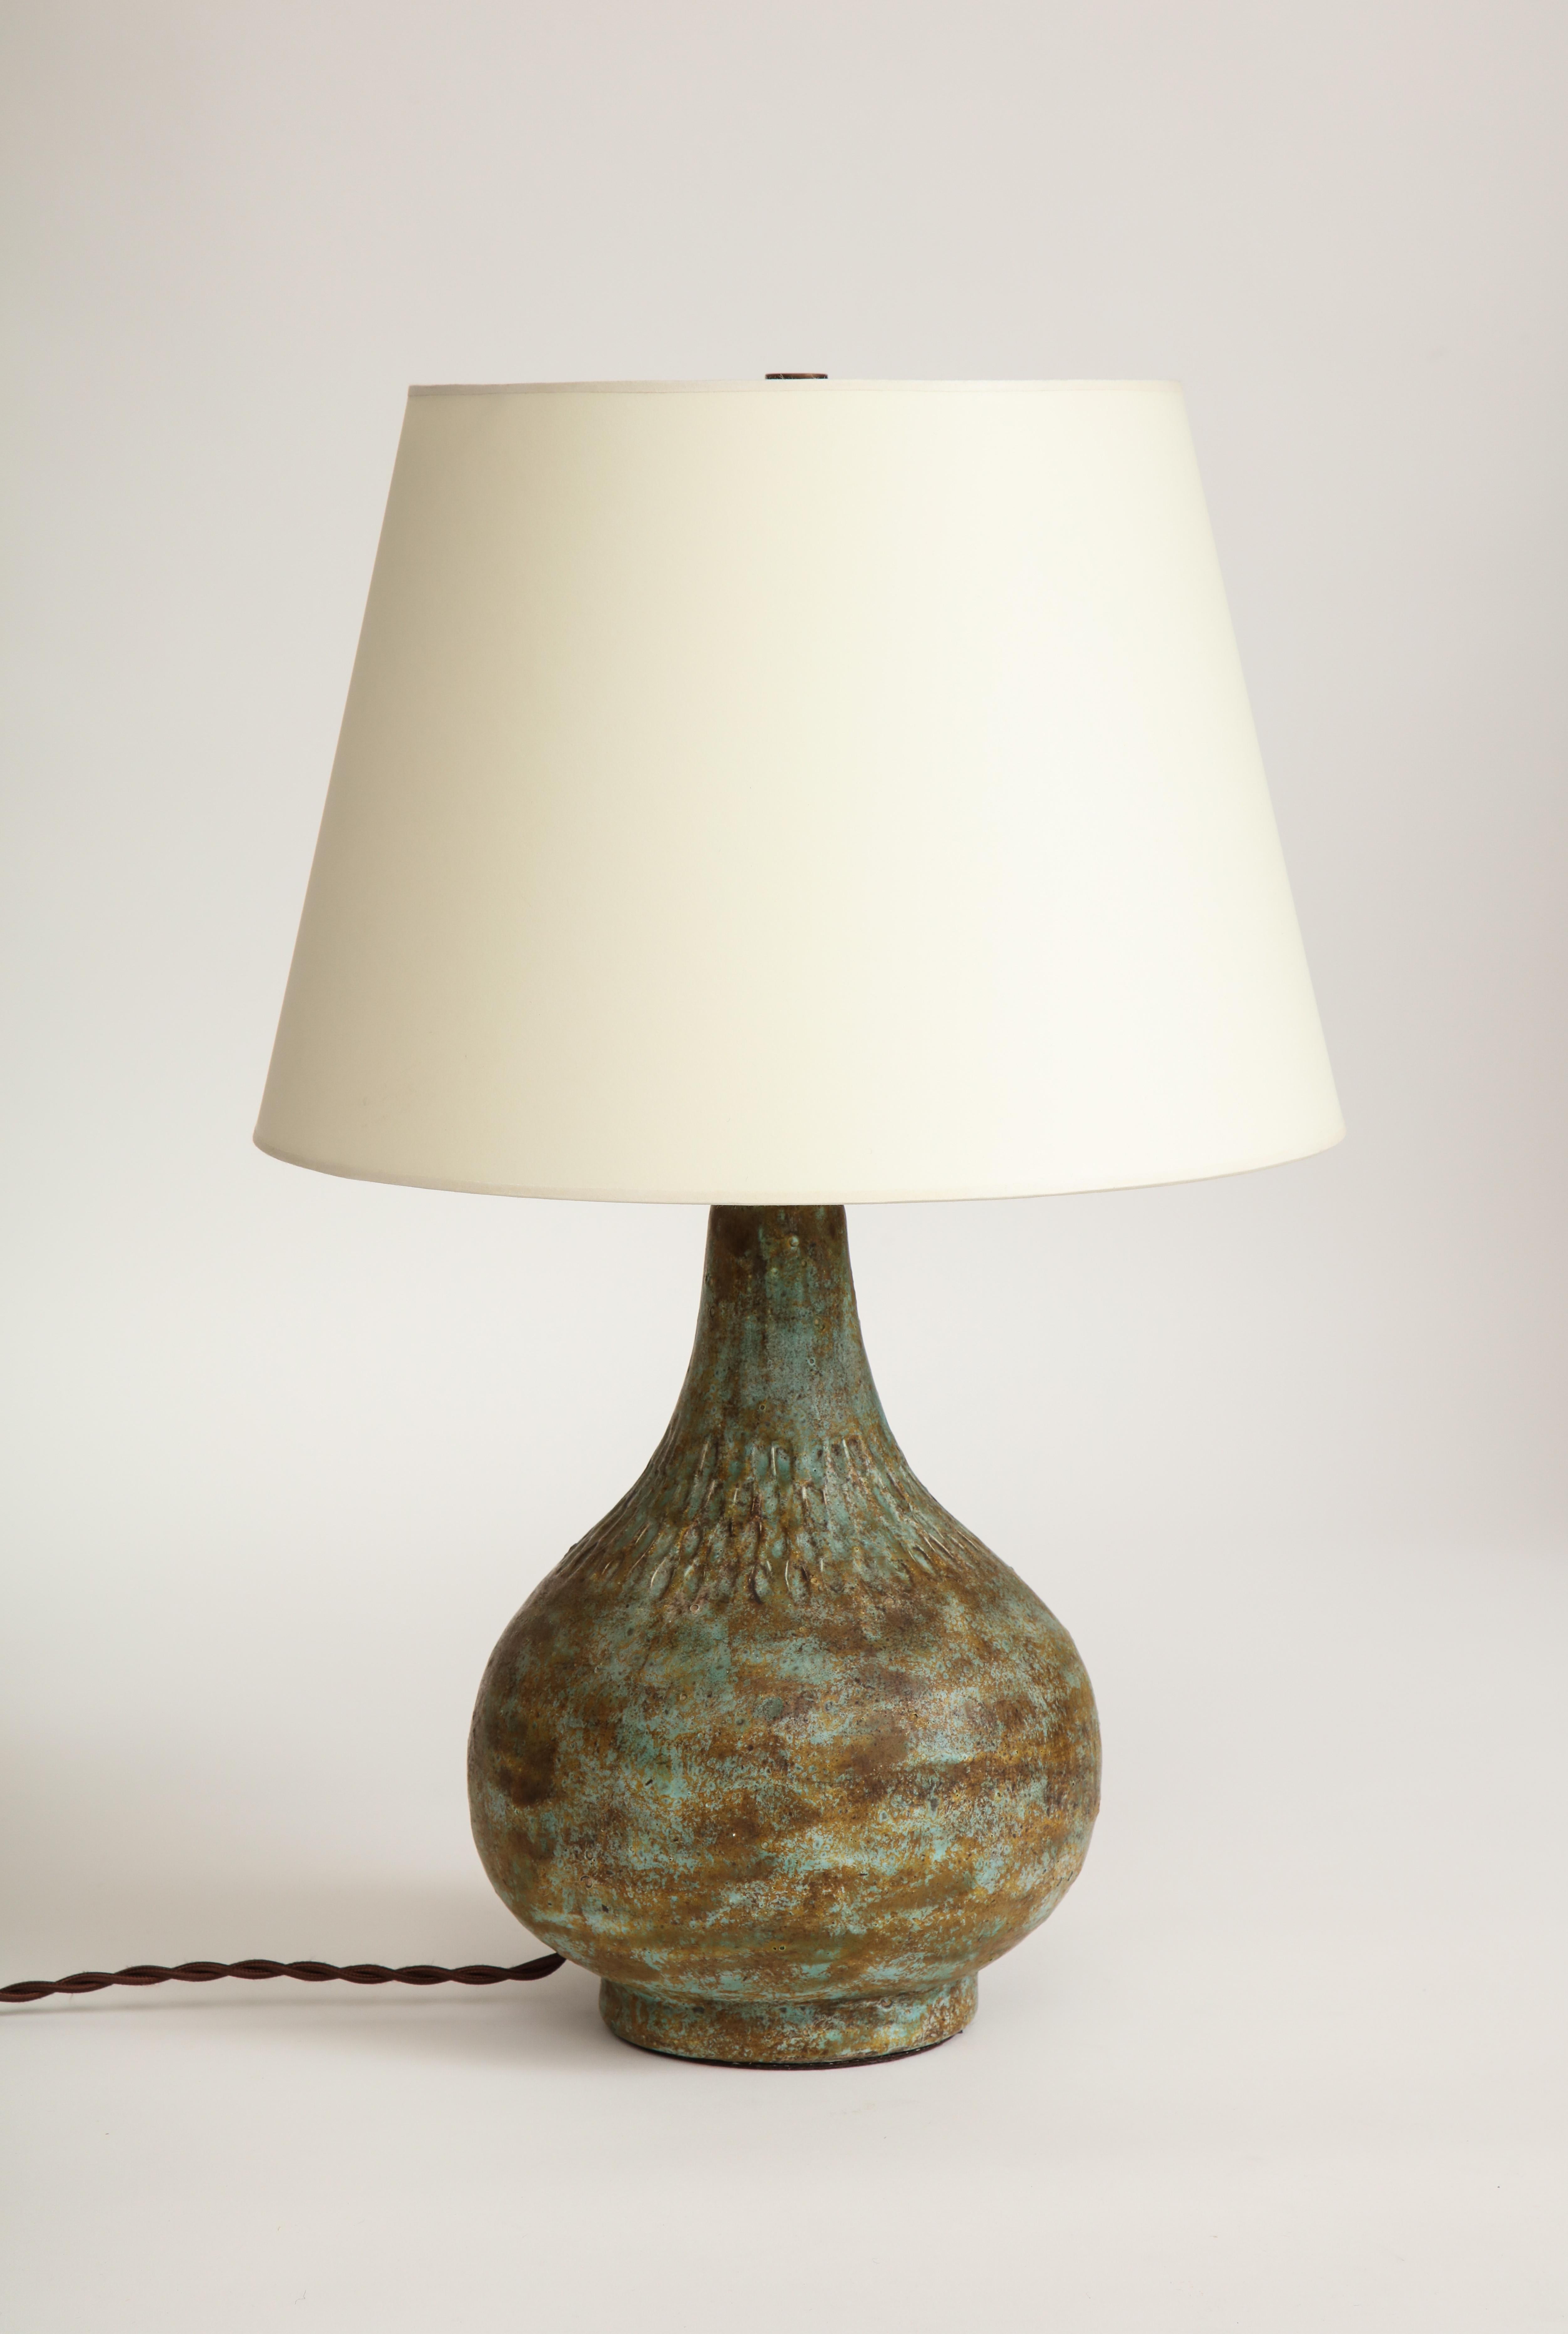 French Mid-century Verdigris Ceramic Table Lamp